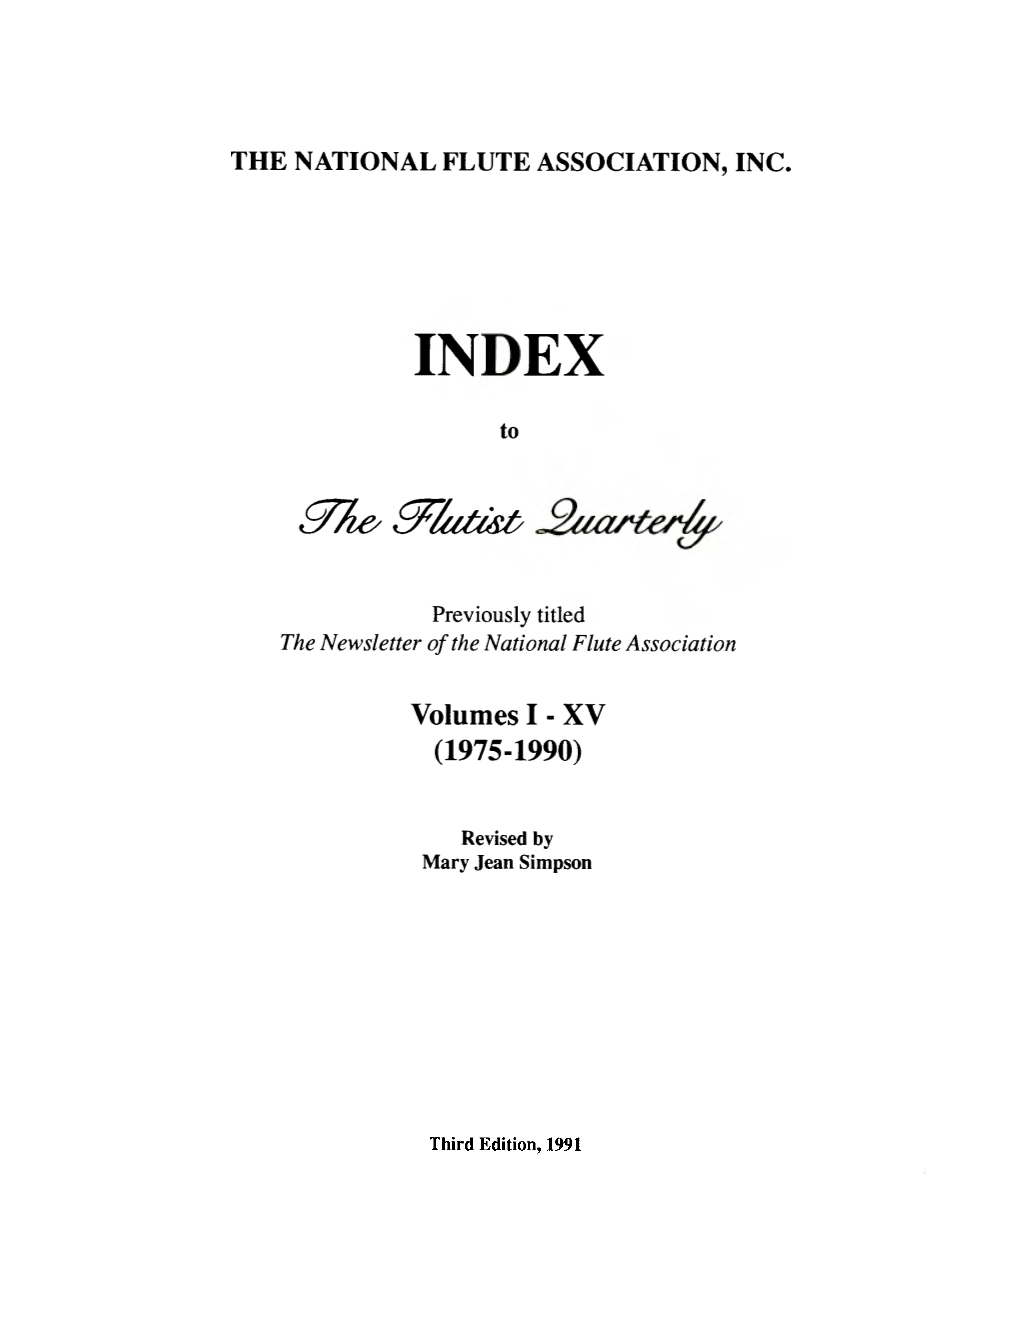 Volumes I - XV (1975-1990)